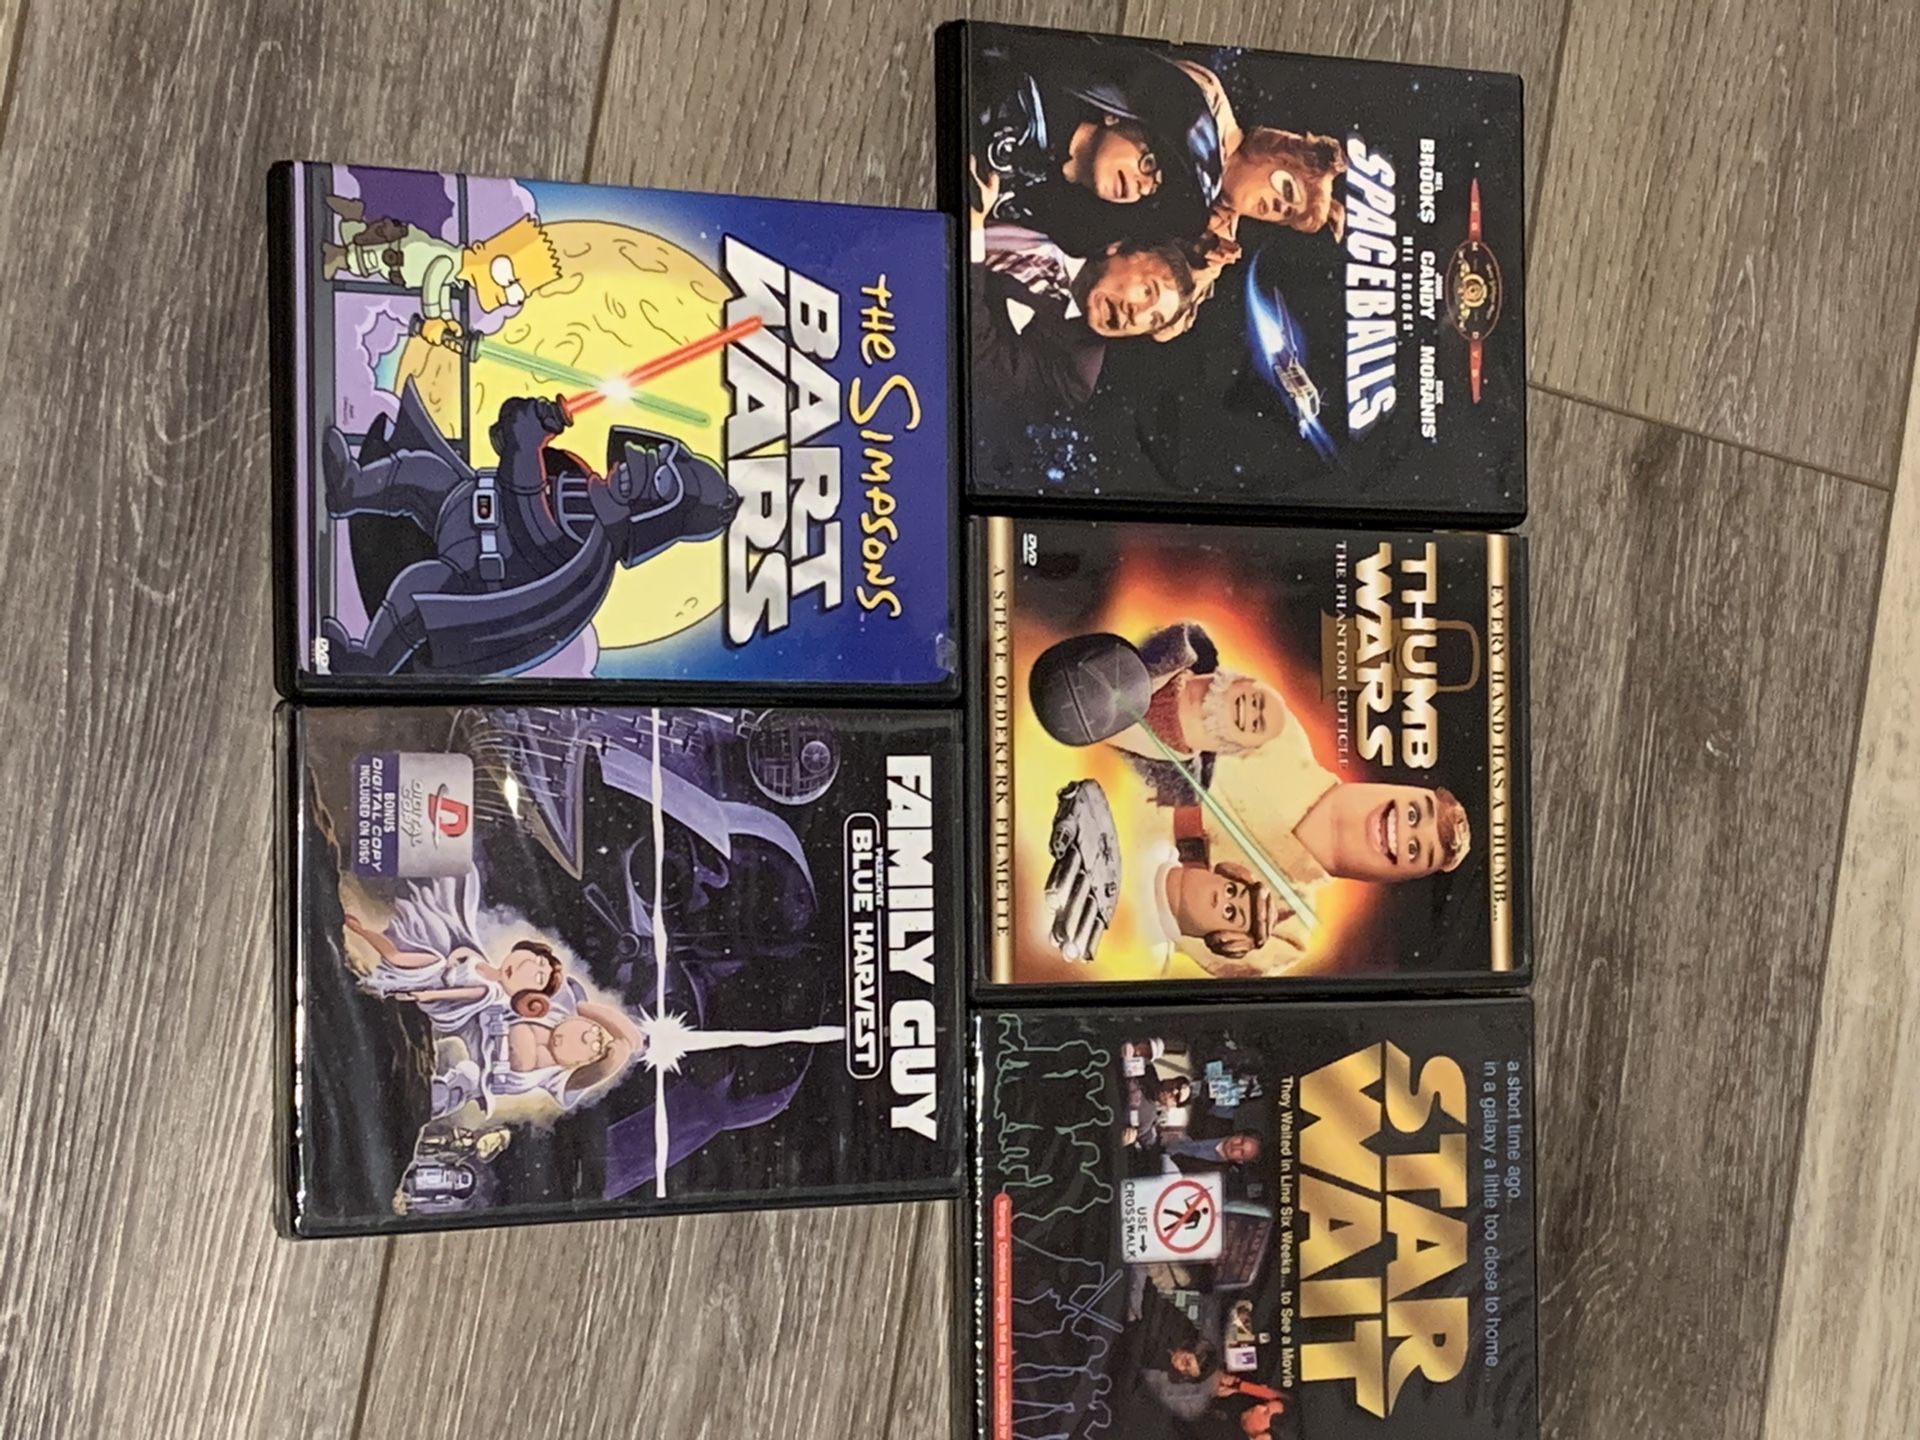 Star Wars Parody DVDs